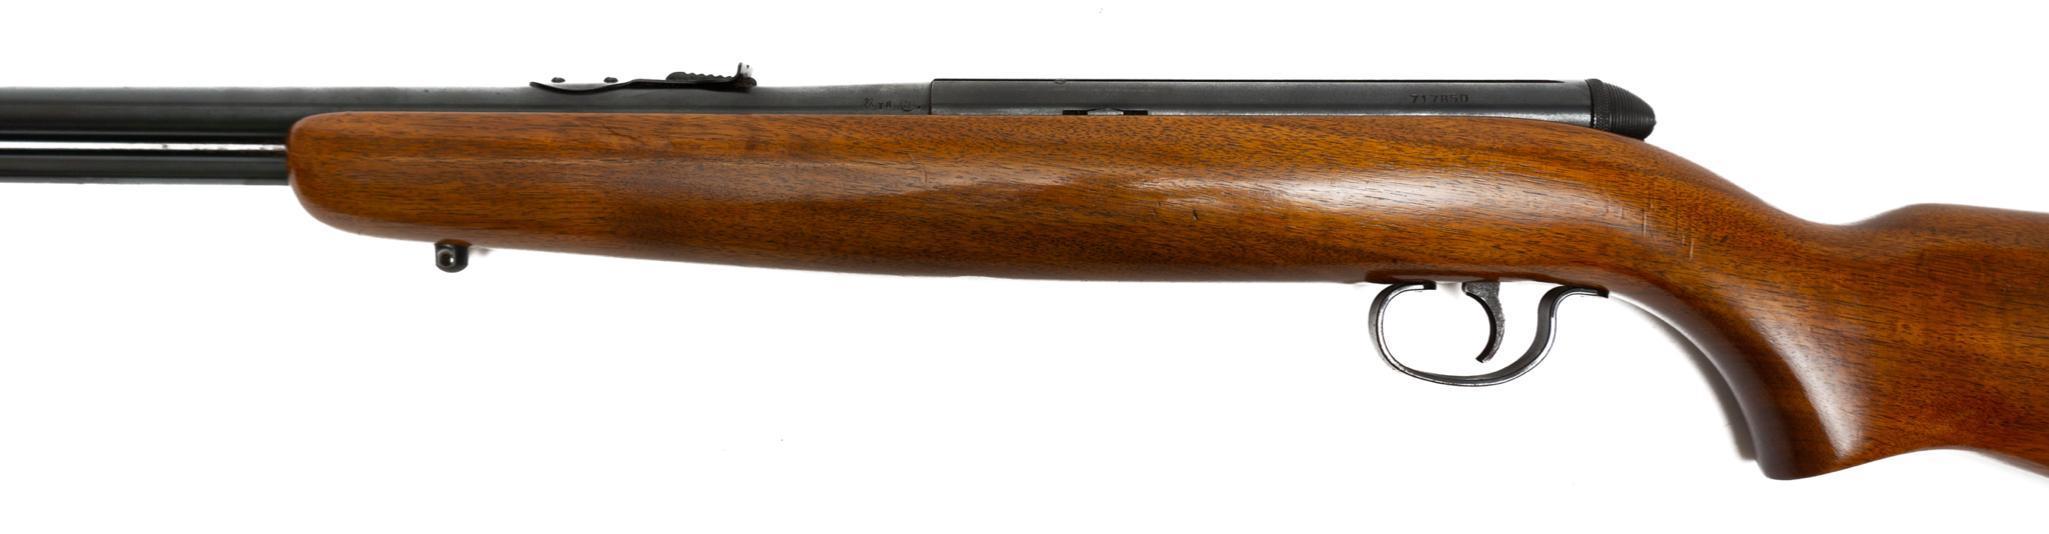 Remington Model 550-1 .22LR Rifle | Vogt Auction